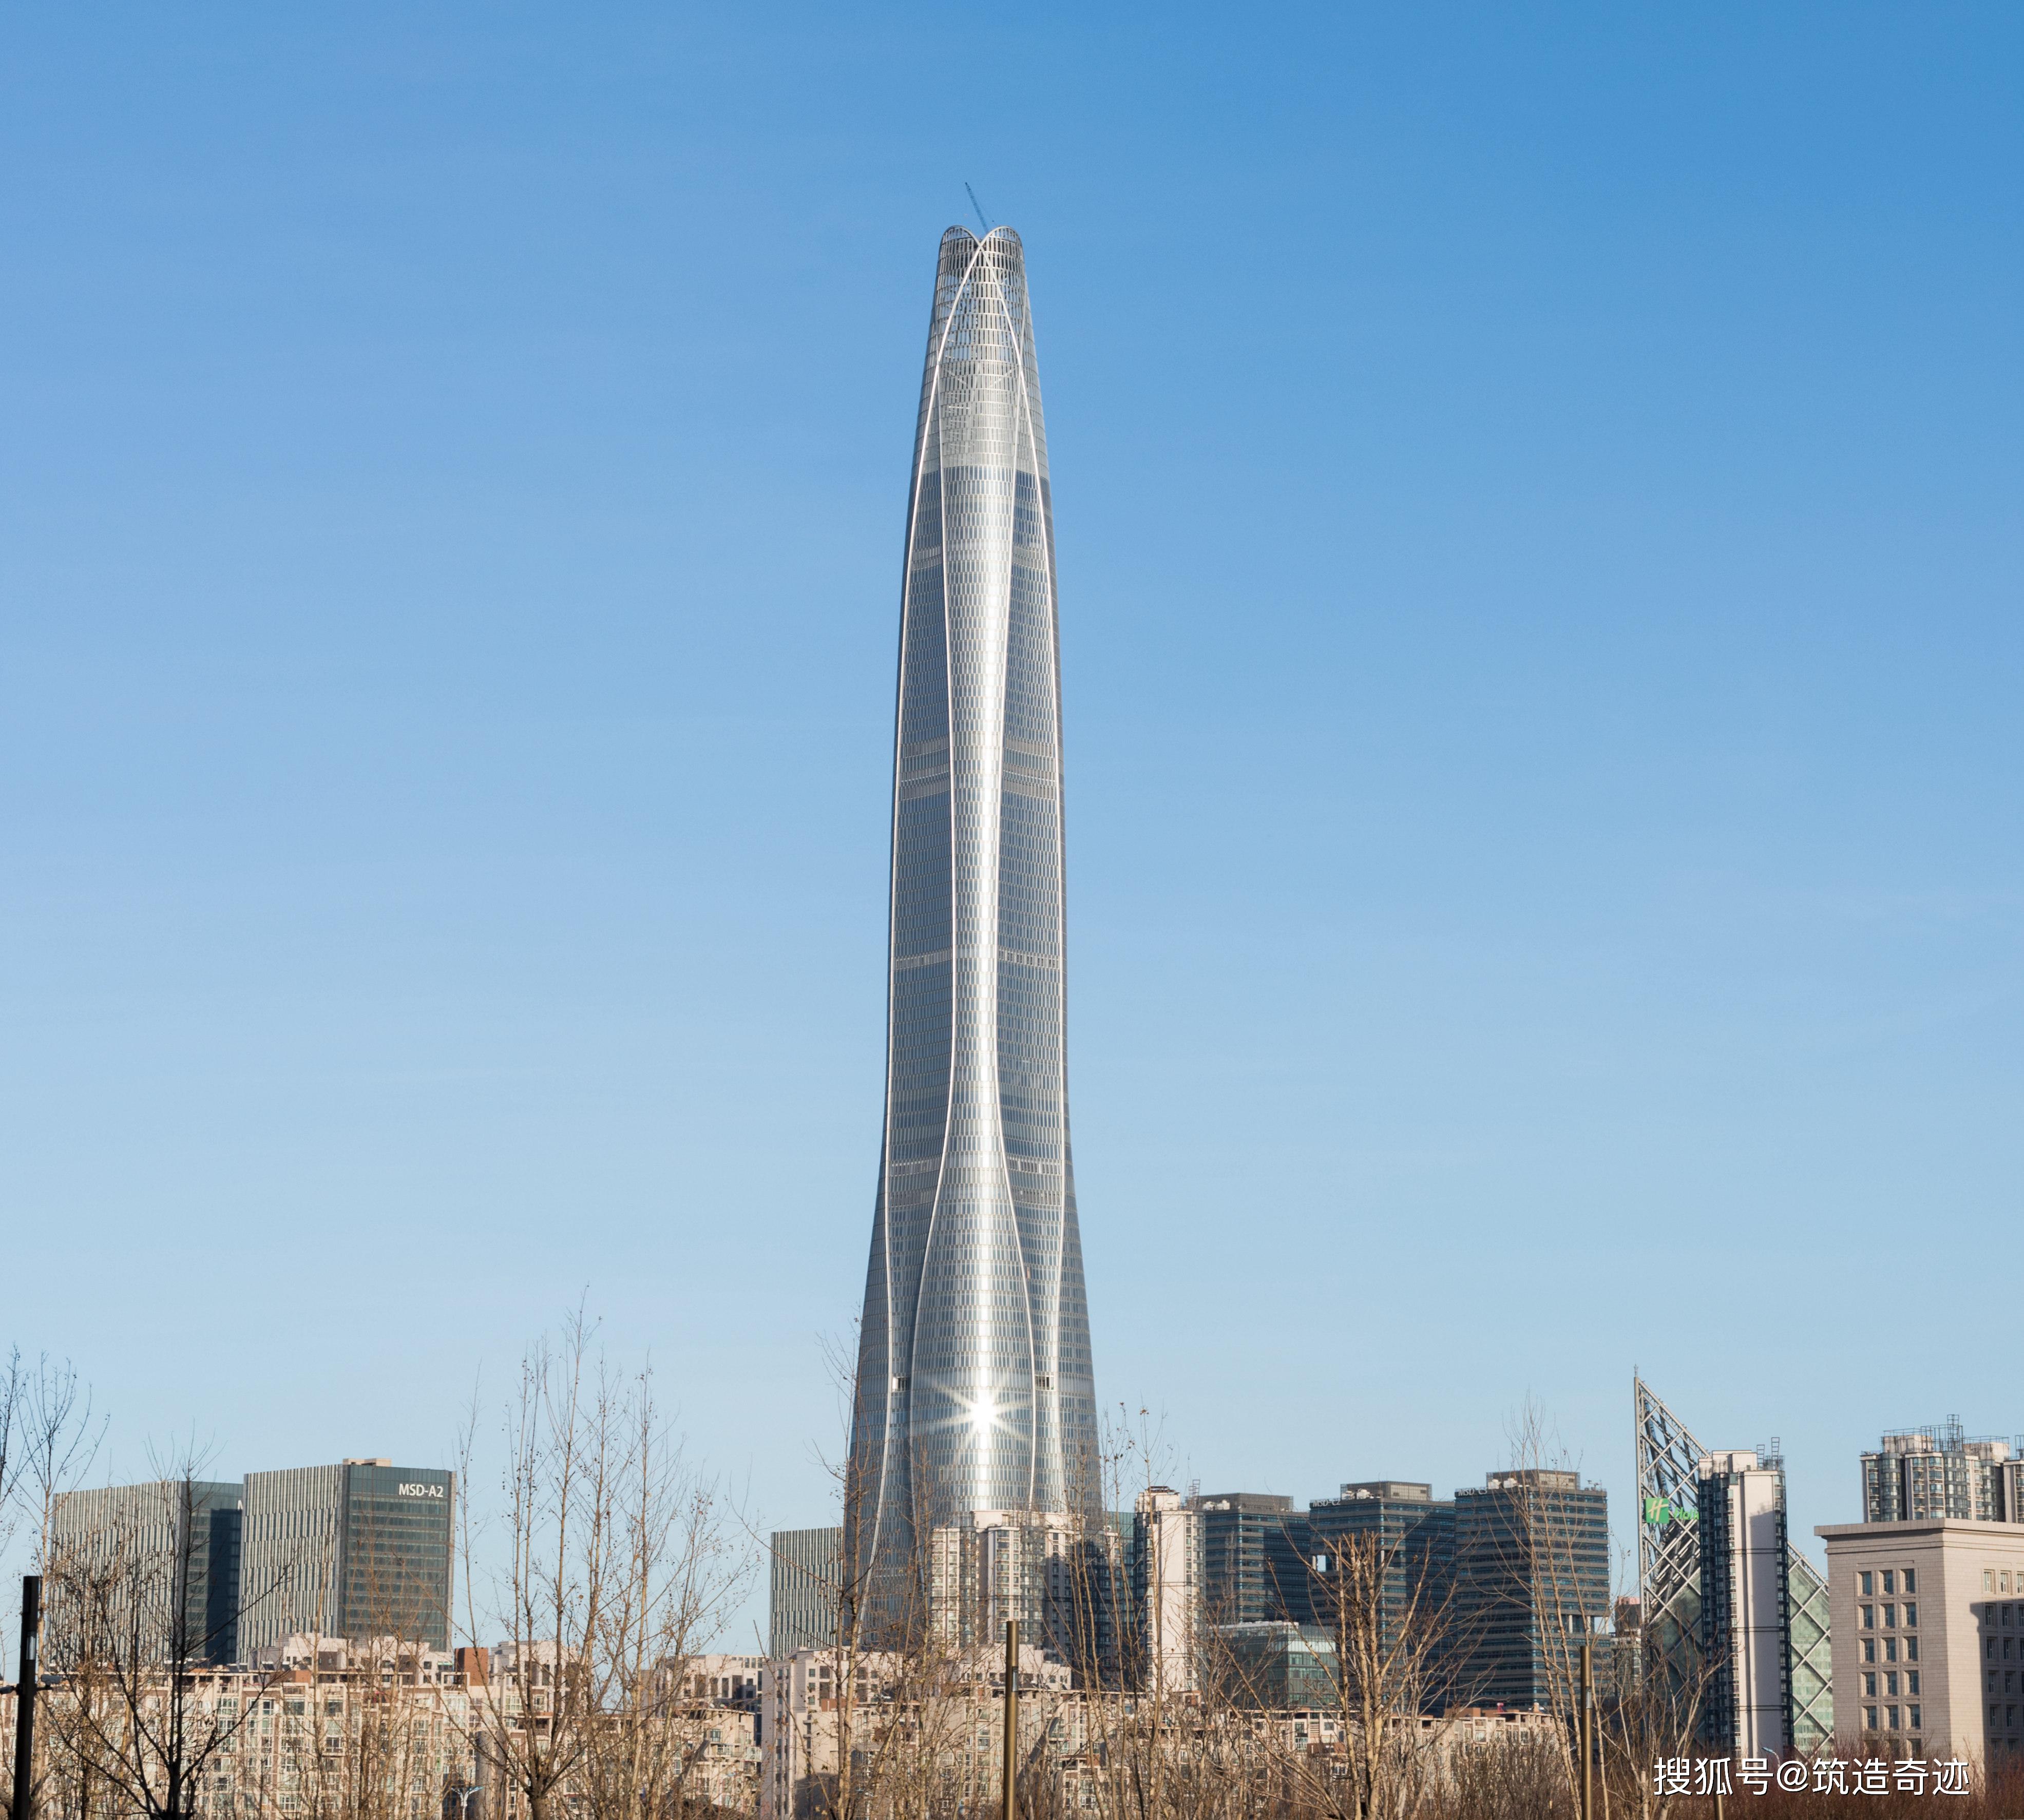 世界最高建筑排名一览 世界最高的20座摩天大楼图片-优刊号